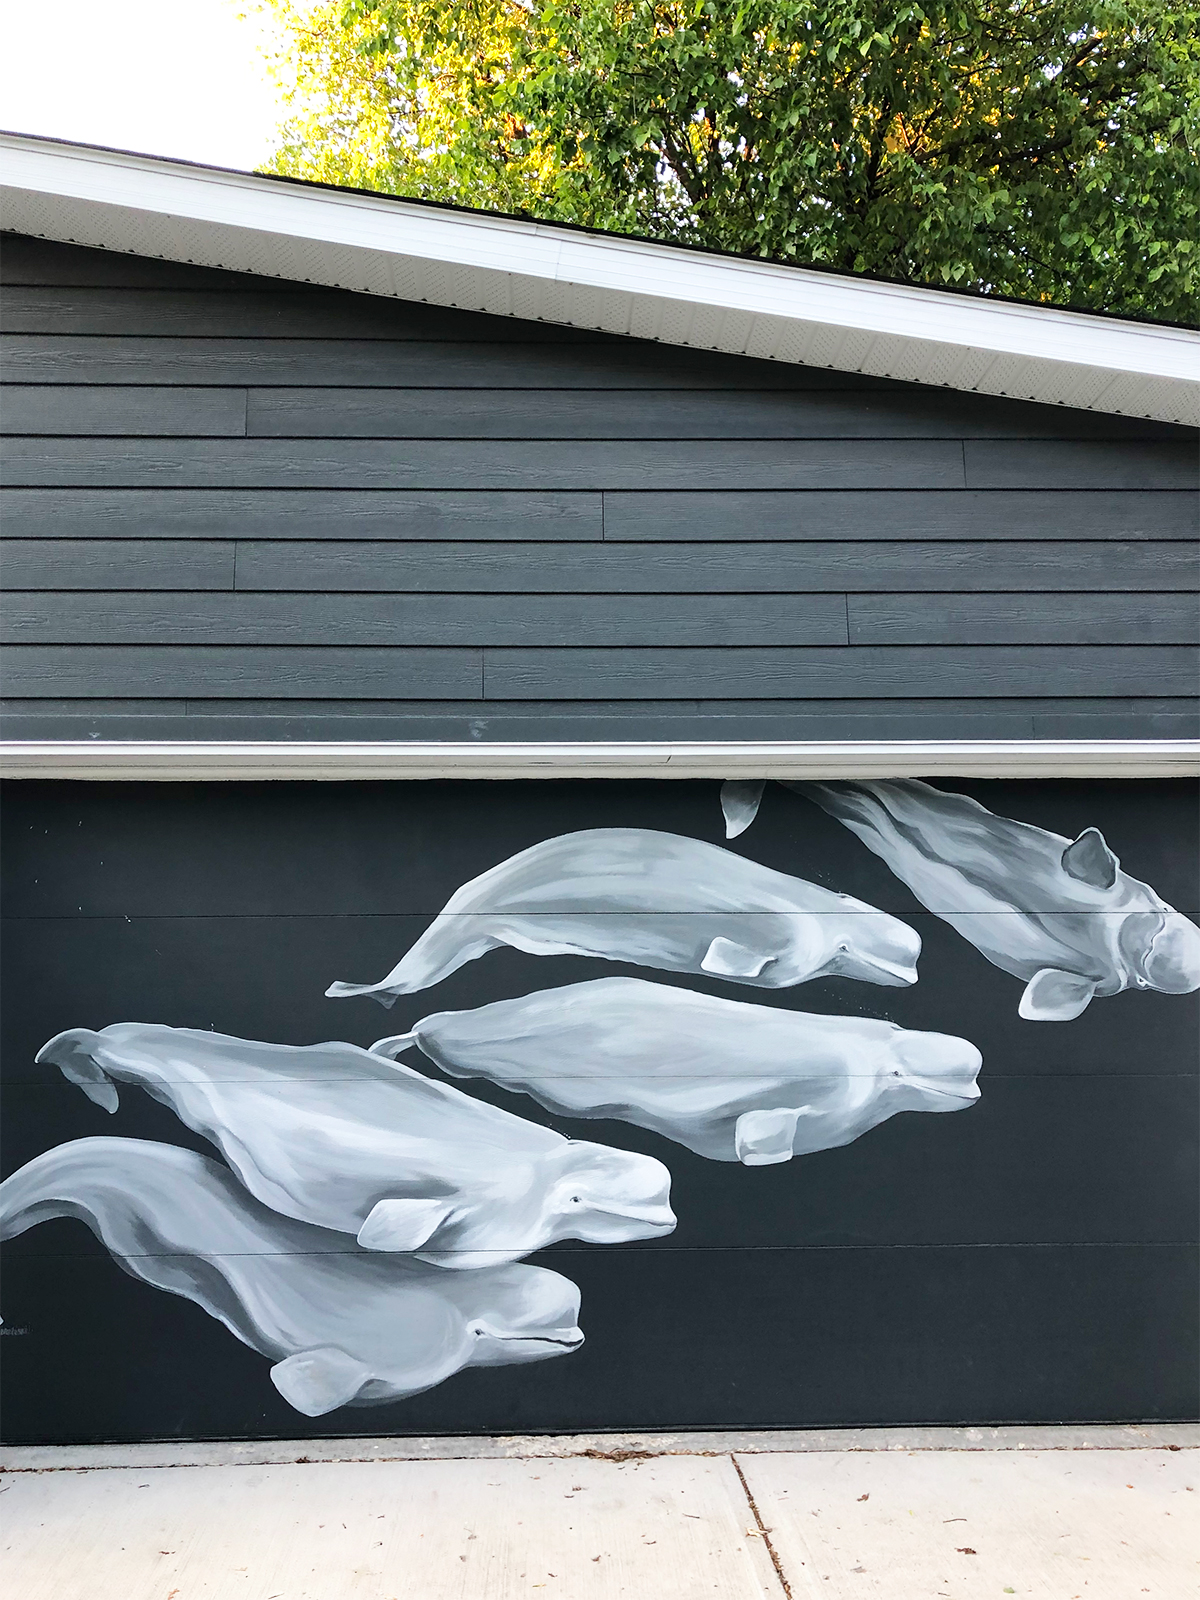 beluga whales mural painted on grey garage door